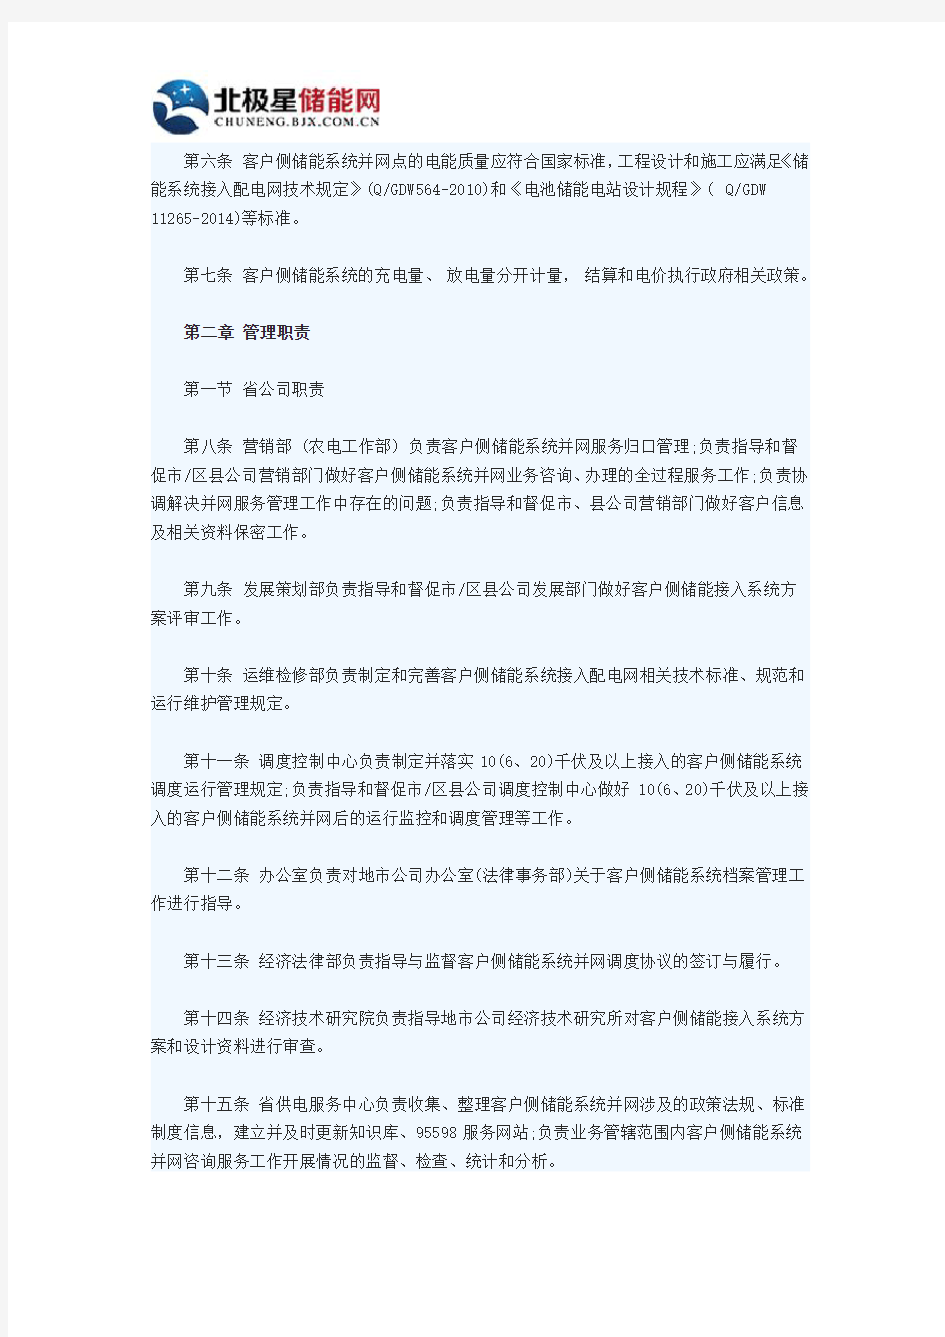 国网江苏发布《客户侧储能系统并网管理规定》(试行)